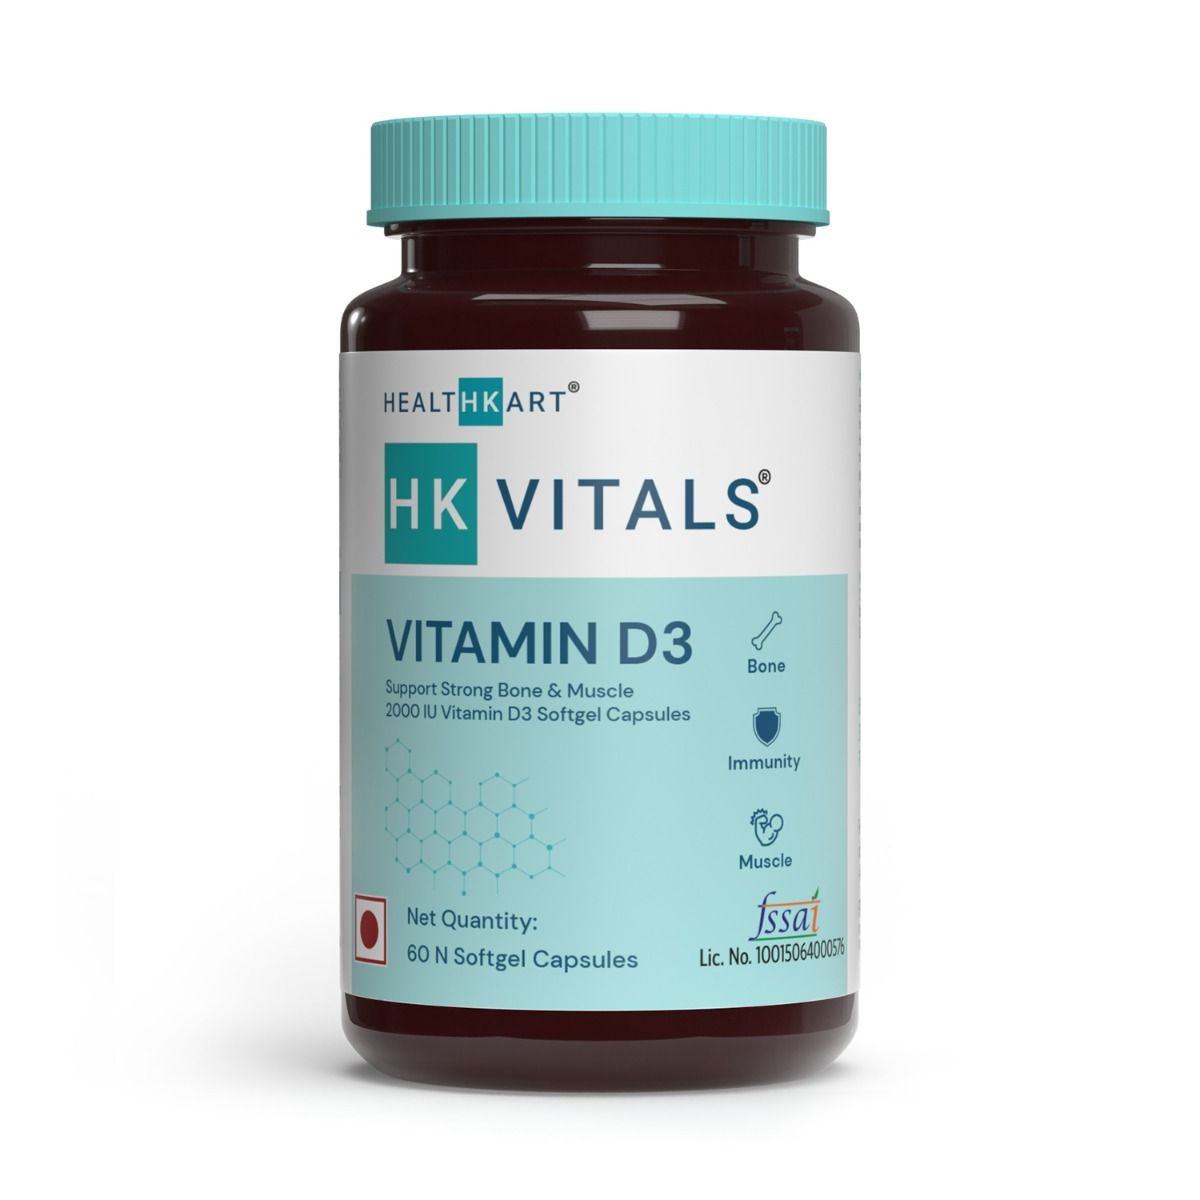 Buy HealthKart HK Vitals Vitamin D3 2000 IU, 60 Softgel Capsules Online